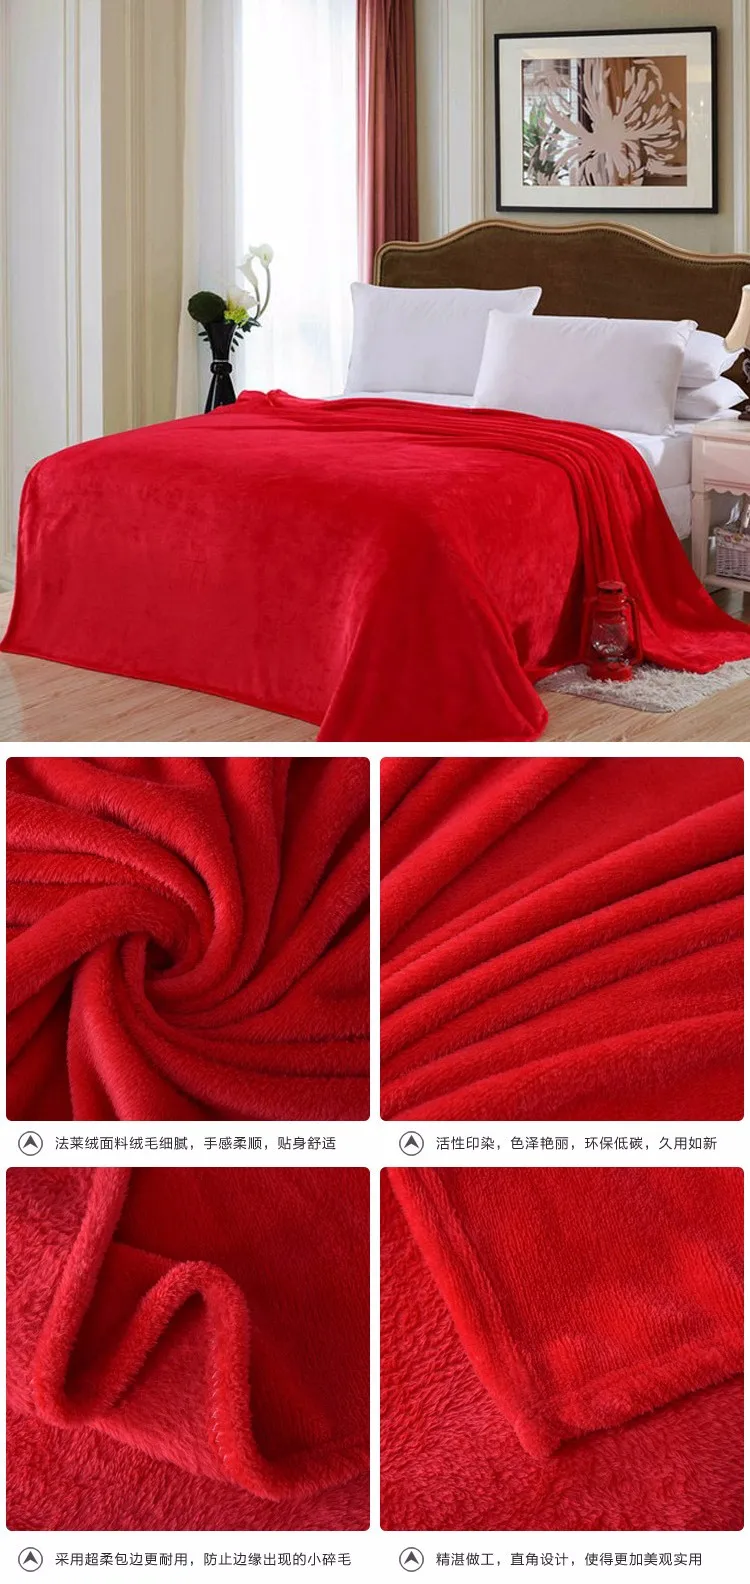 Горячая домашняя ткань фланелевое одеяло розовый плед очень теплый мягкий покрывало одеяла на диван/кровать/Самолет путешествия лоскутное одноцветное покрывало